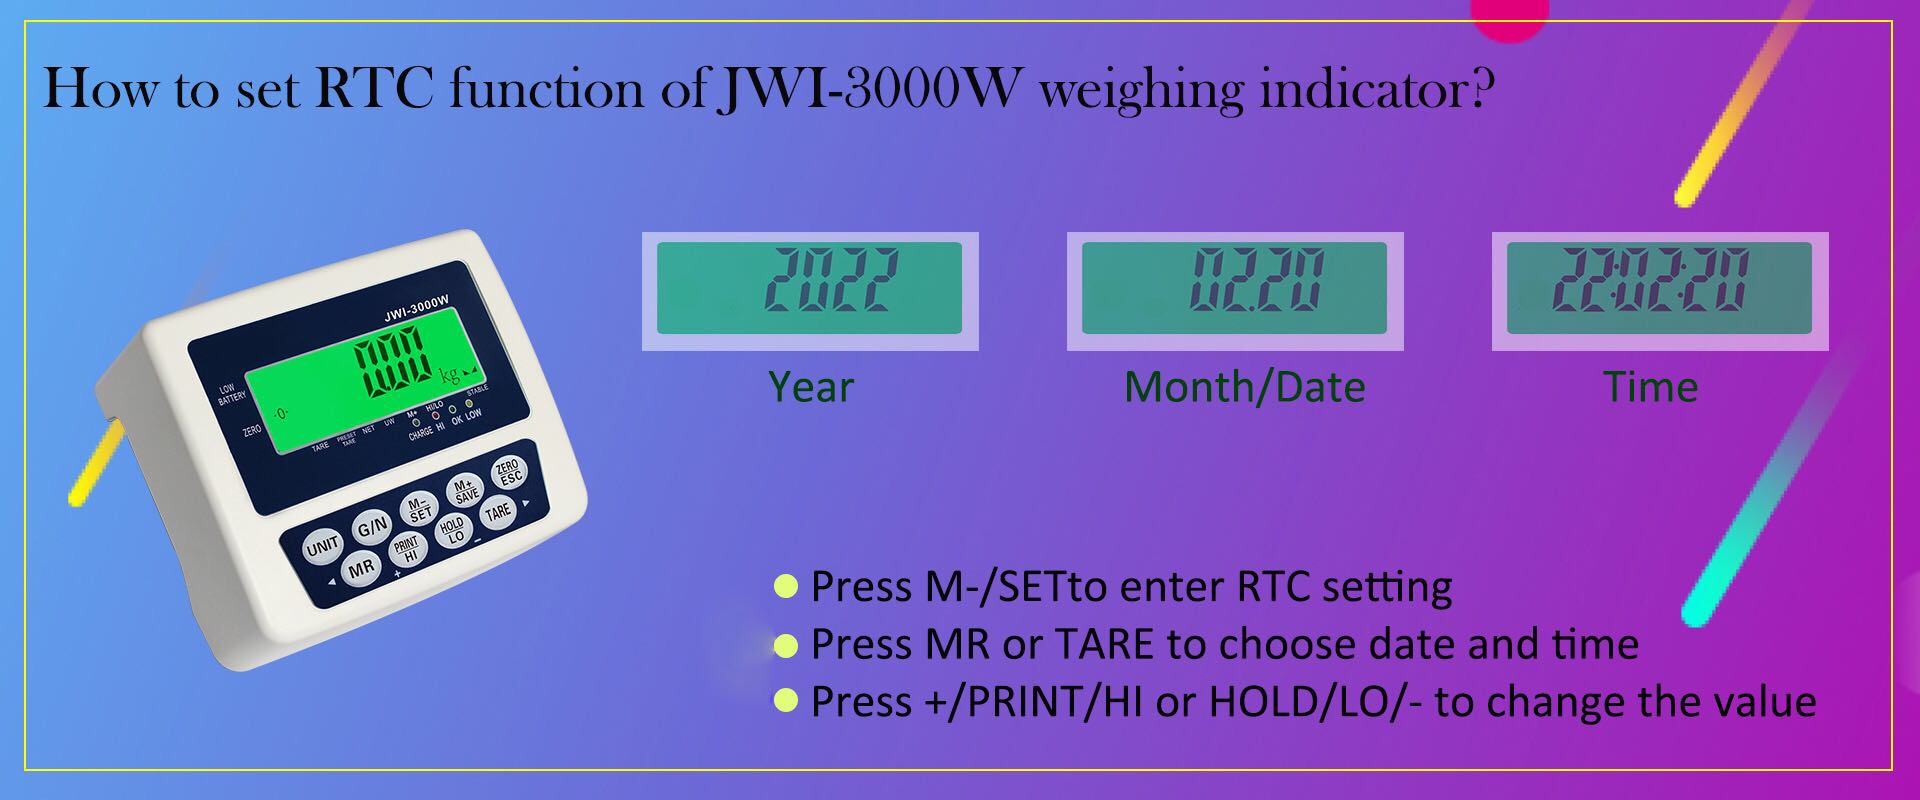 كيفية ضبط وظيفة RTC لمؤشر الوزن الصناعي JWI-3000W